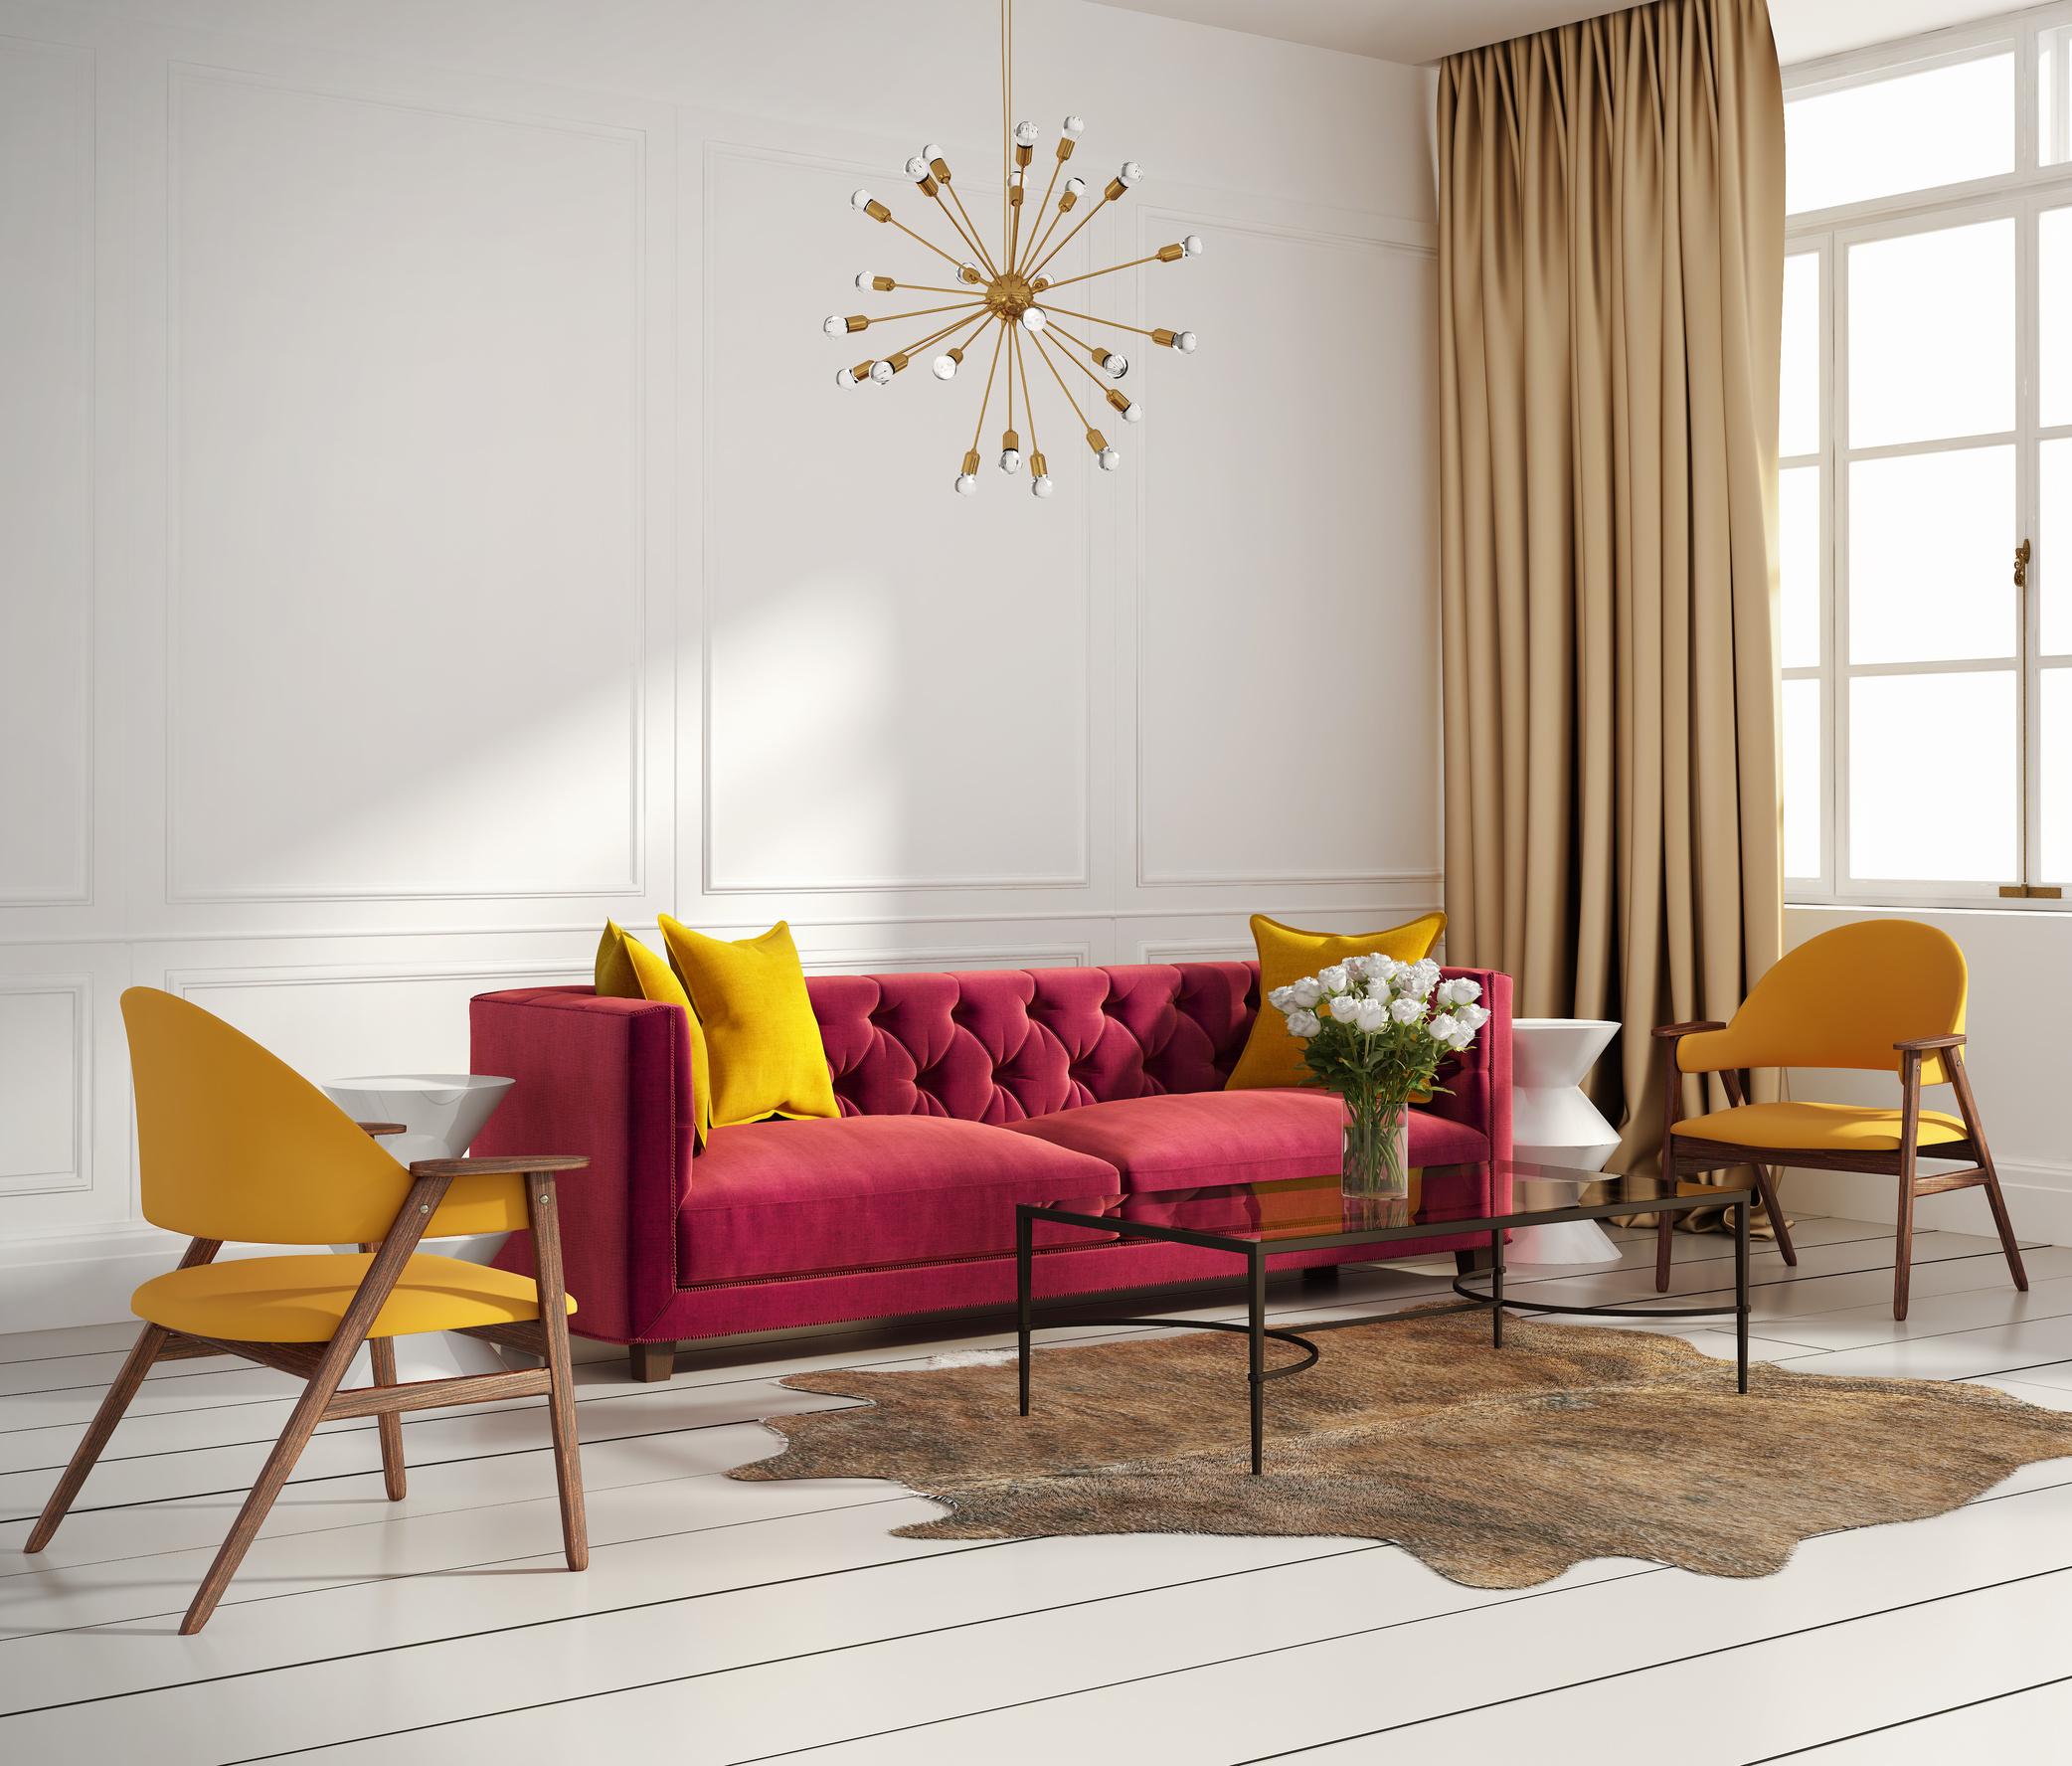 Ein klassisch aussehendes Sofa #stuhl #sessel #kissen #vorhang #ikea #zimmergestaltung ©Saustark Design GmbH